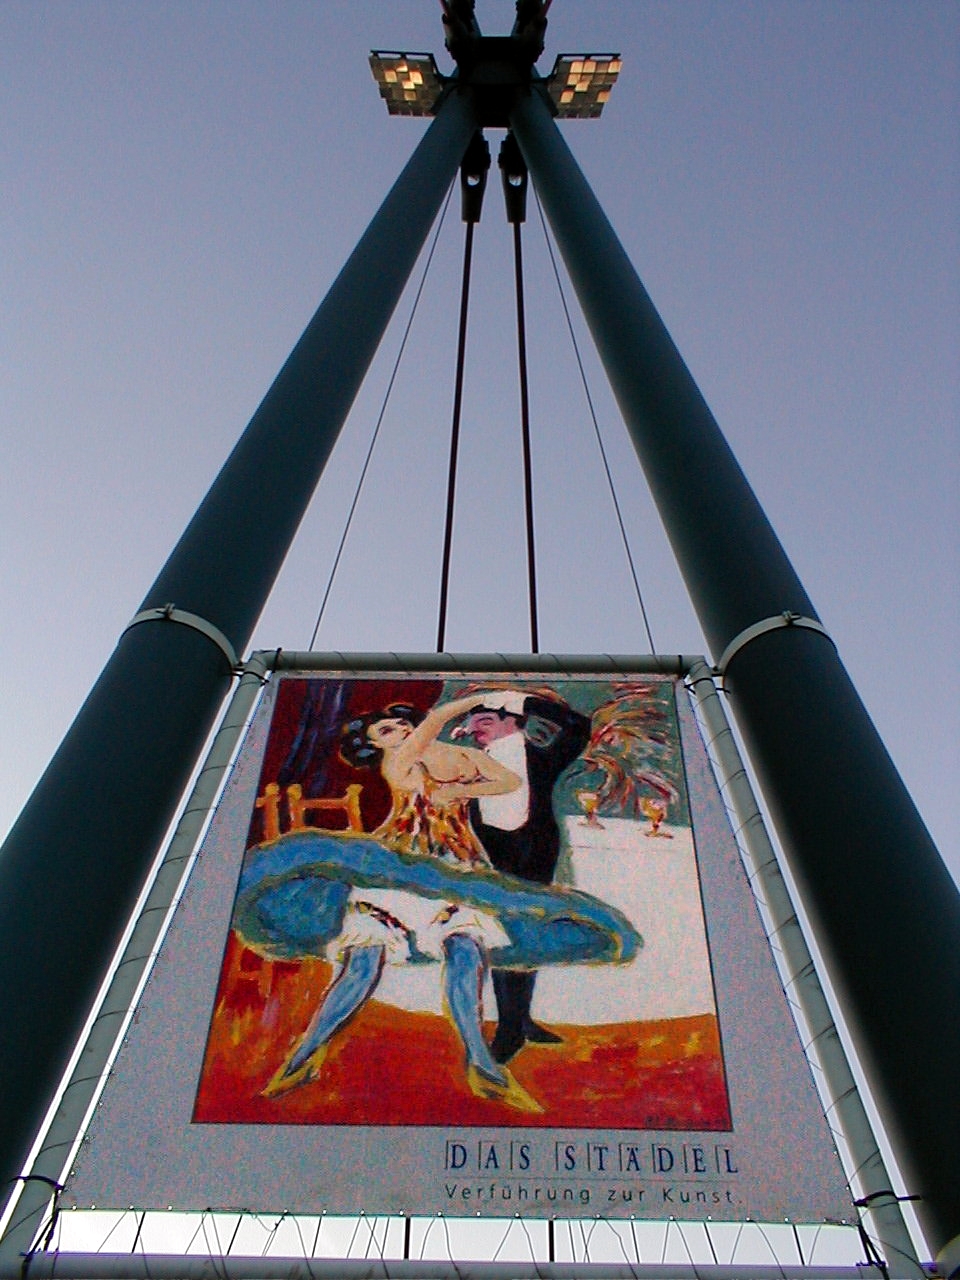 Verführung zur Kunst - on the bridge in Frankfurt am Main